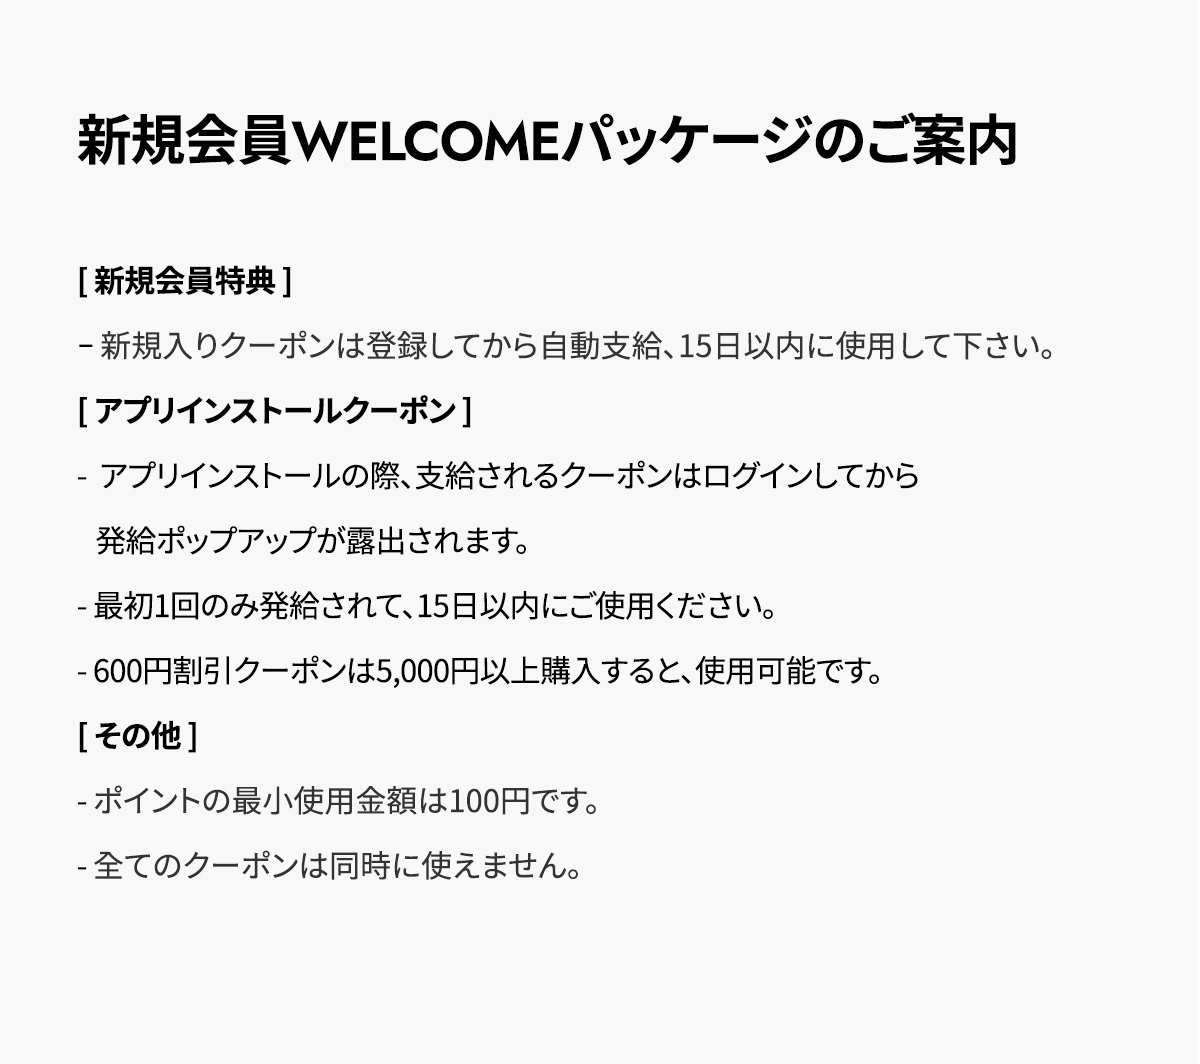 DOROSIWA新規会員 WELCOMEパッケージの ご案内 notice